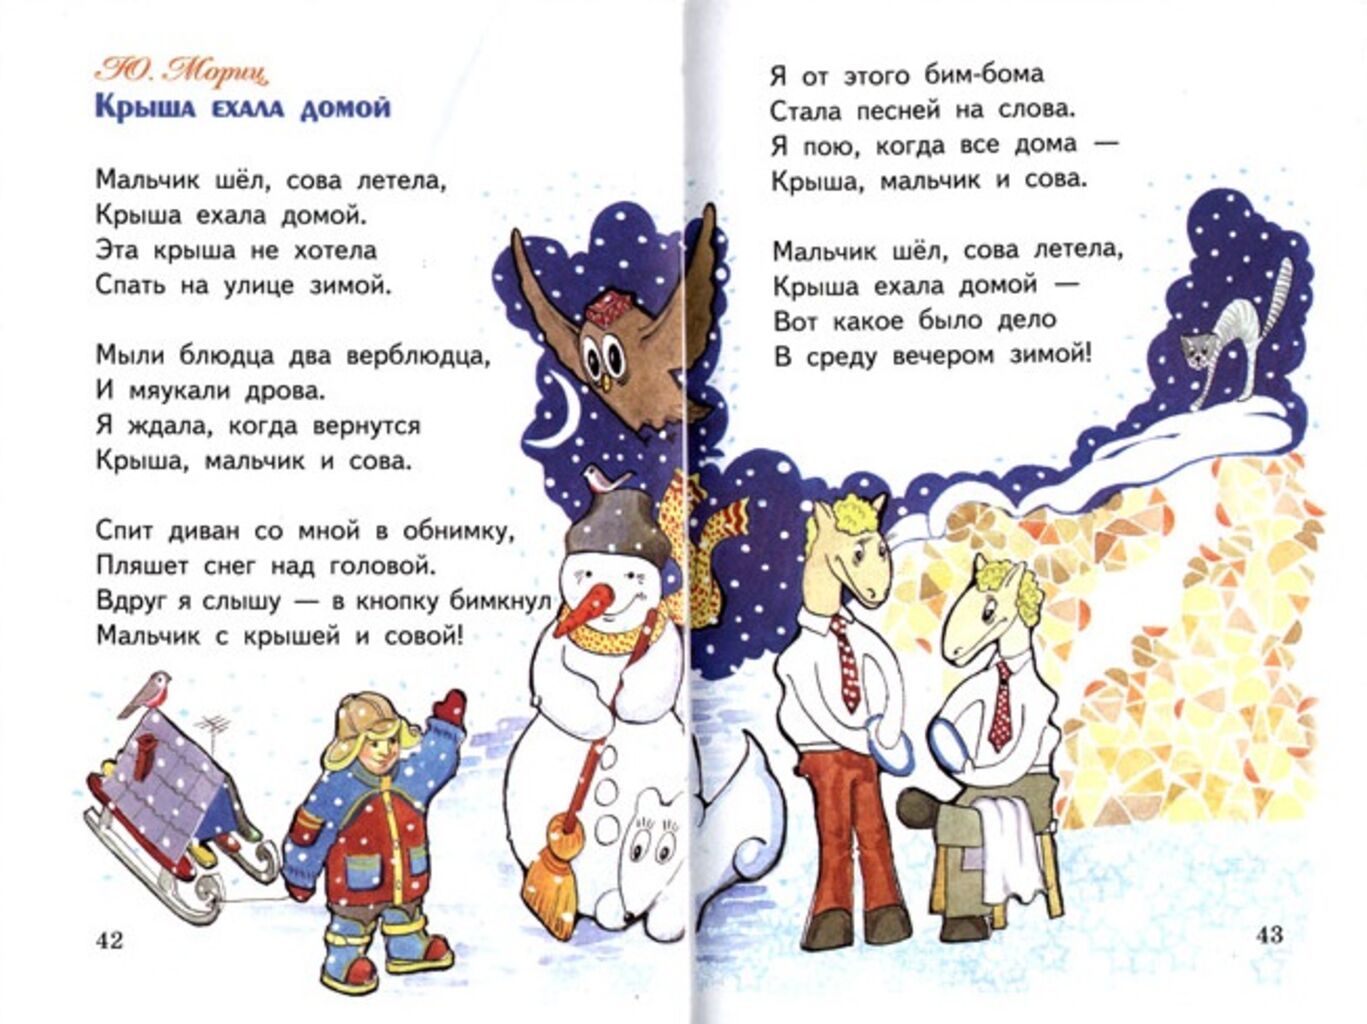 Стихотворение хорошее 2 класс. Юнна Мориц крыша ехала домой. Смешные стихи для детей. Смешные детские стихи. Смешные стихотг для детей.